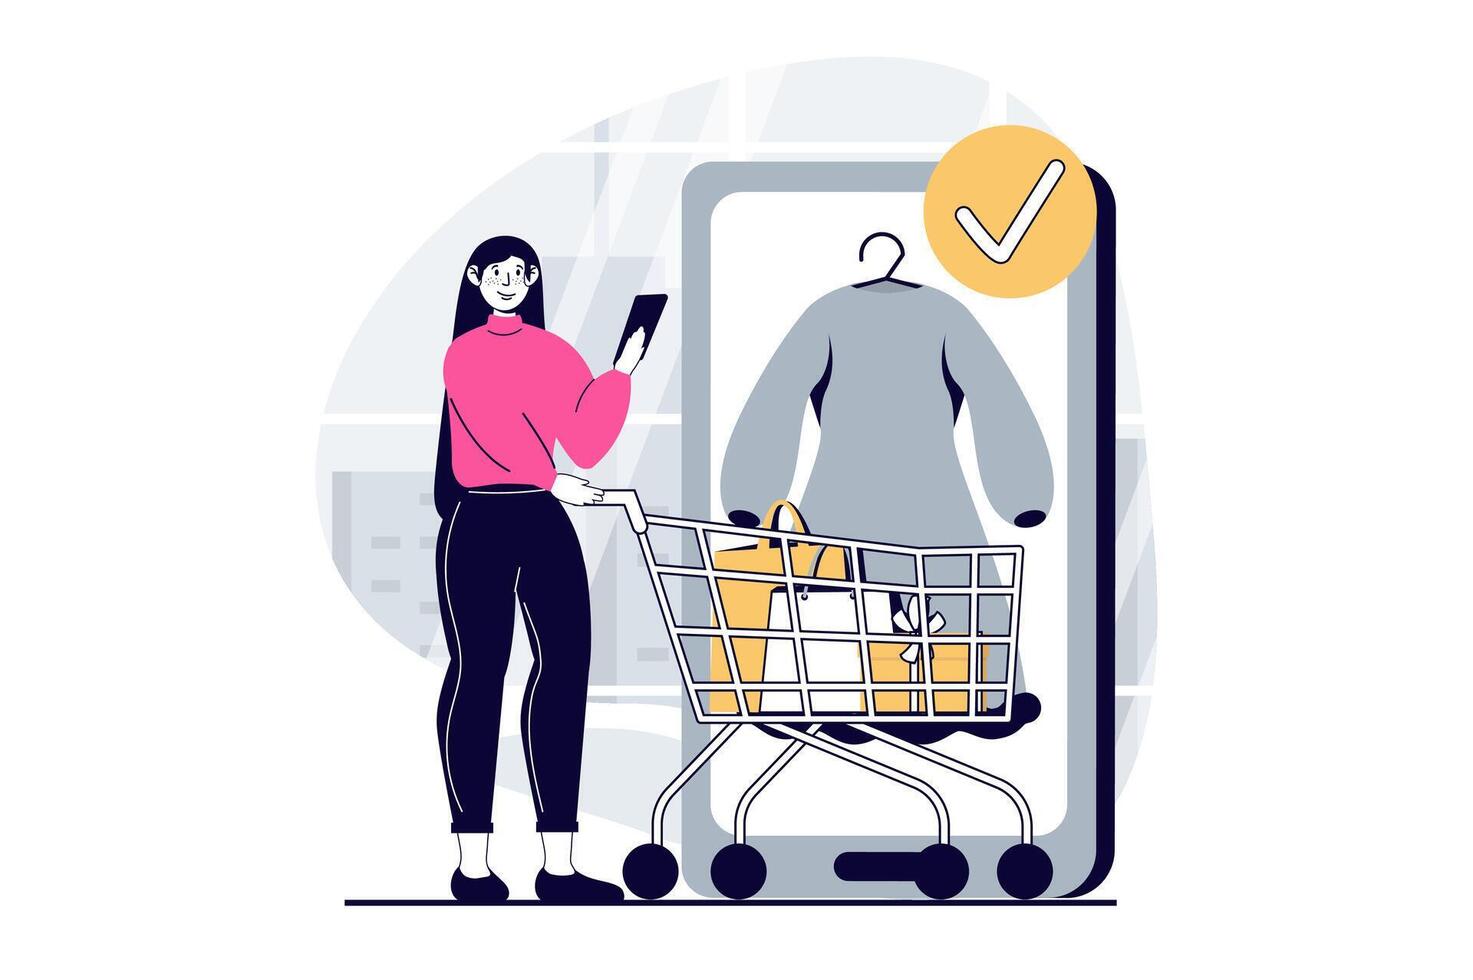 mobil handel begrepp med människor scen i platt design för webb. kvinna med mataffär vagn välja kläder i uppkopplad Lagra app. vektor illustration för social media baner, marknadsföring material.